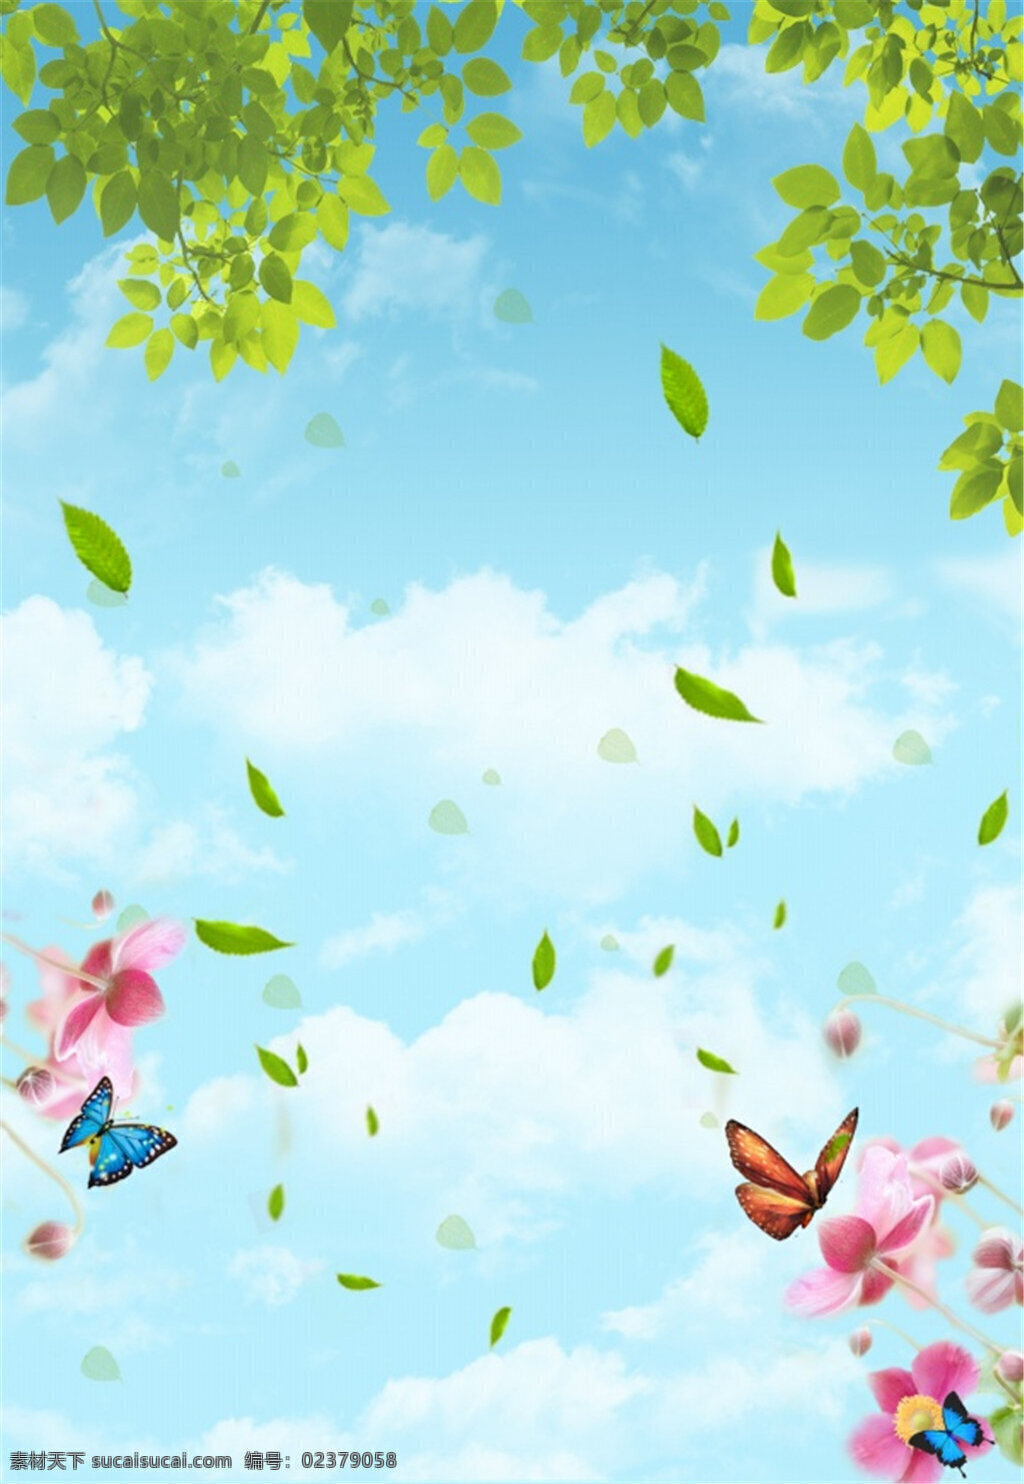 蓝天 白云 分层 海报 公层海报 蝴蝶 鲜花 绿叶 青色 天蓝色